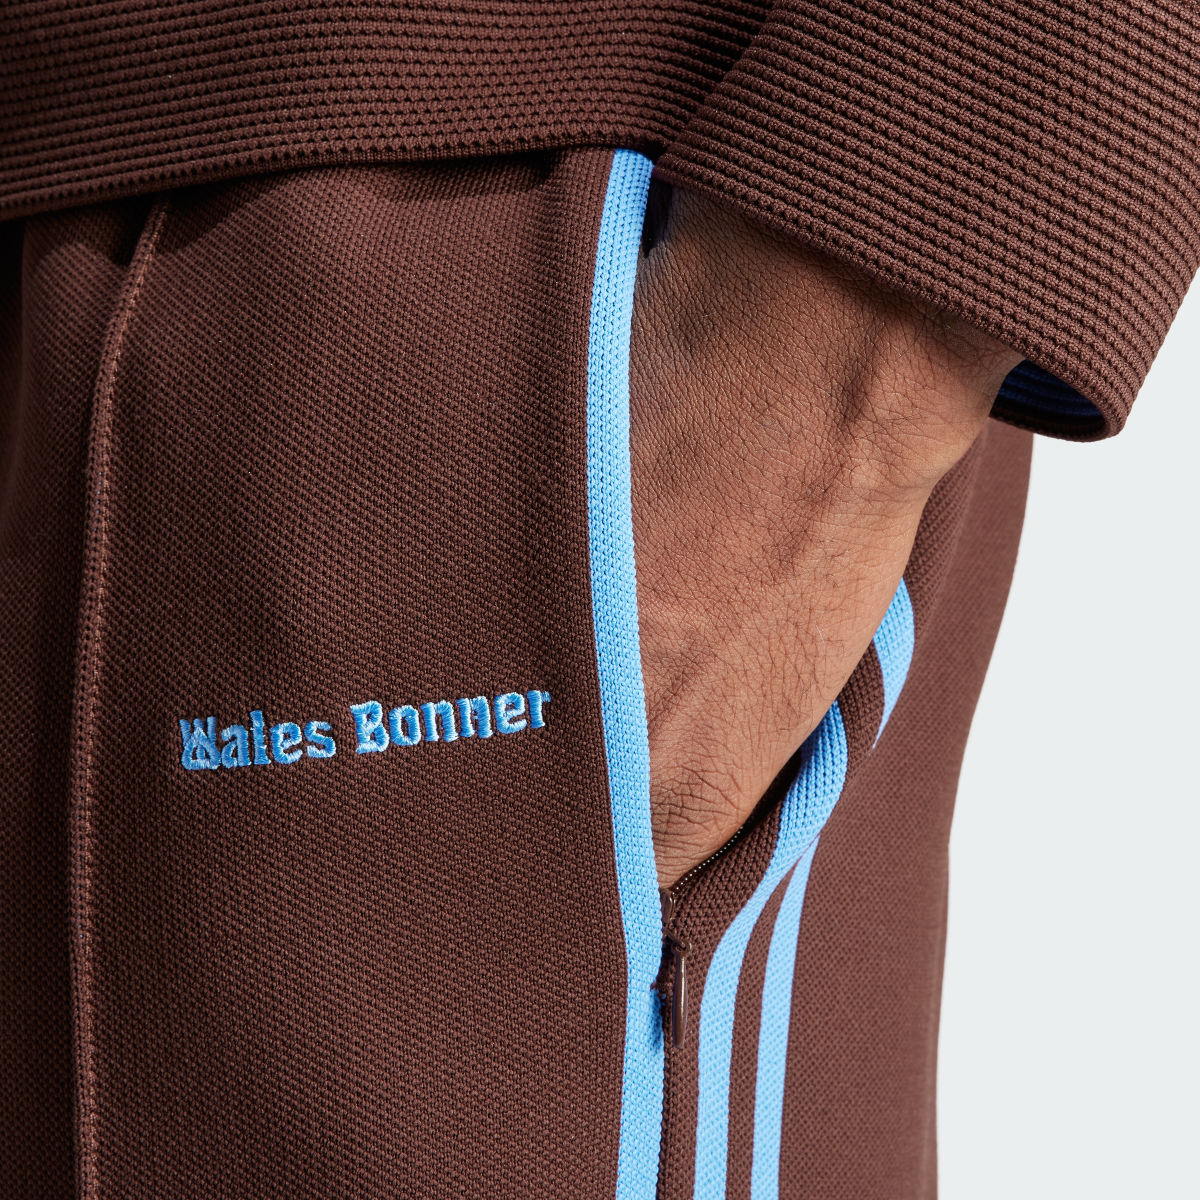 Adidas Wales Bonner Track Suit Pants. 7